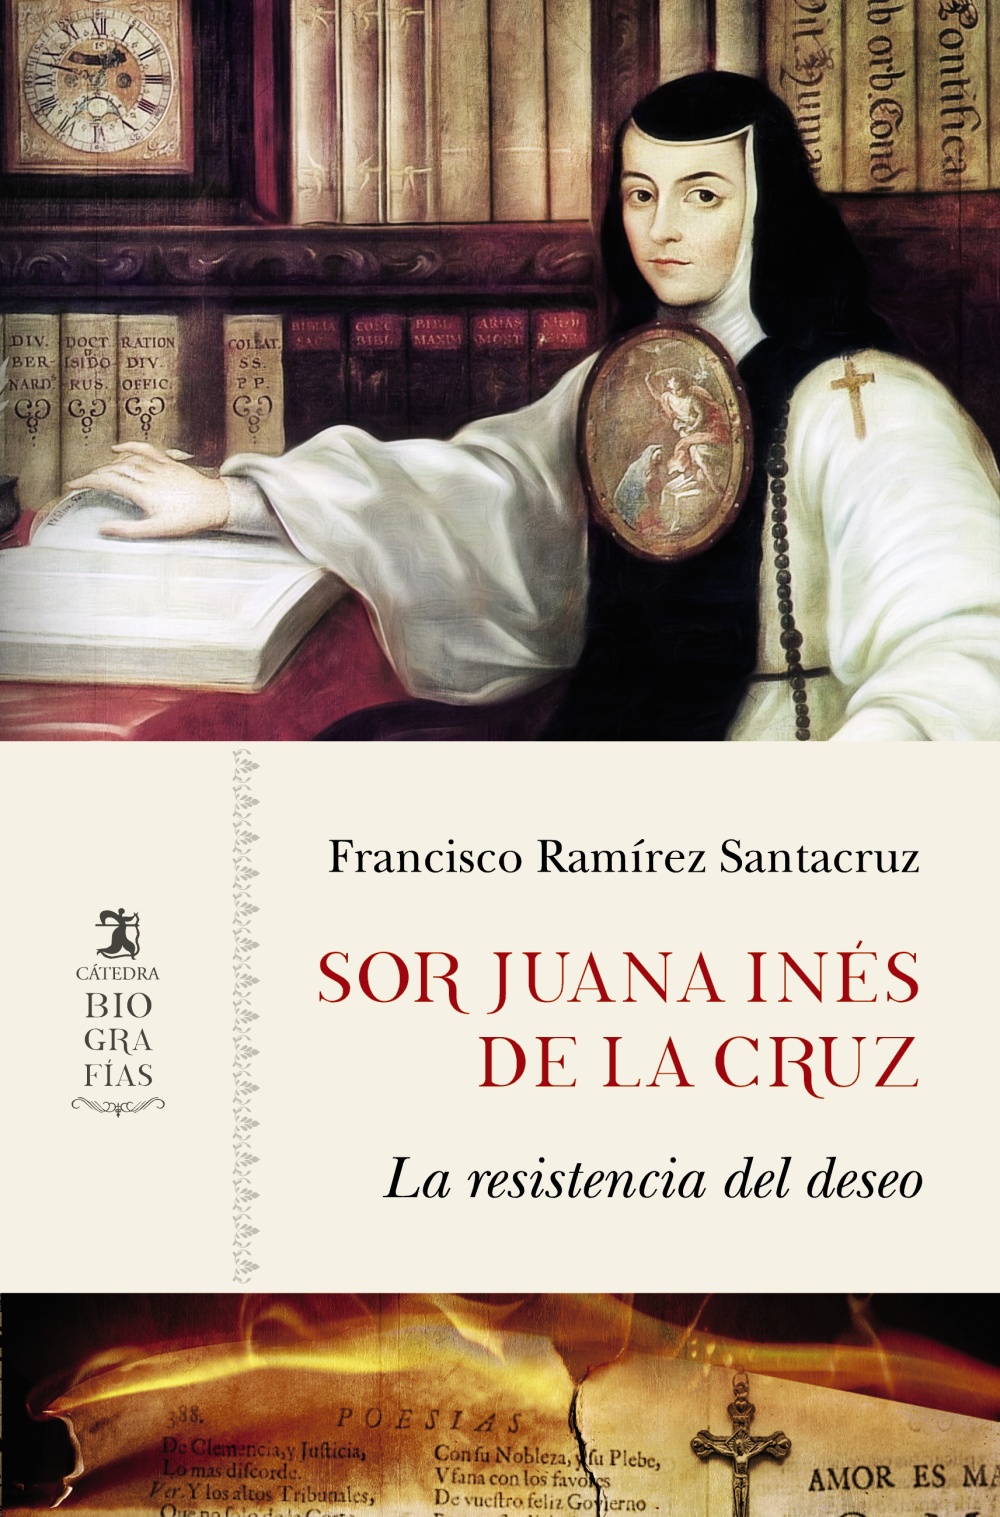 Chaise longue solitario Comprensión Sor Juana Inés de la Cruz - Ediciones Cátedra